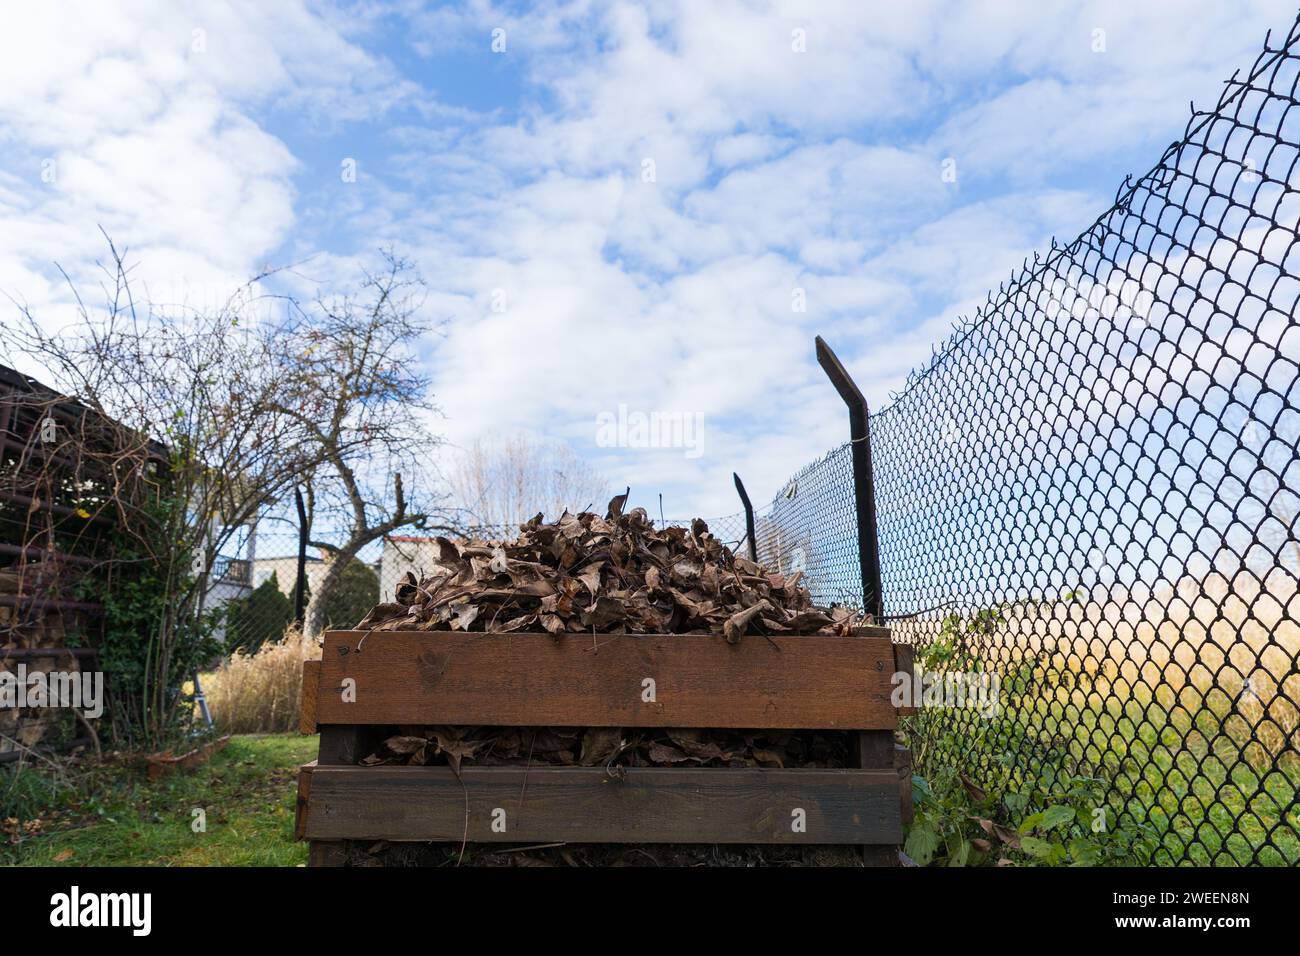 Un compostador hecho de tablas de madera llenas de hojas secas. Foto de stock